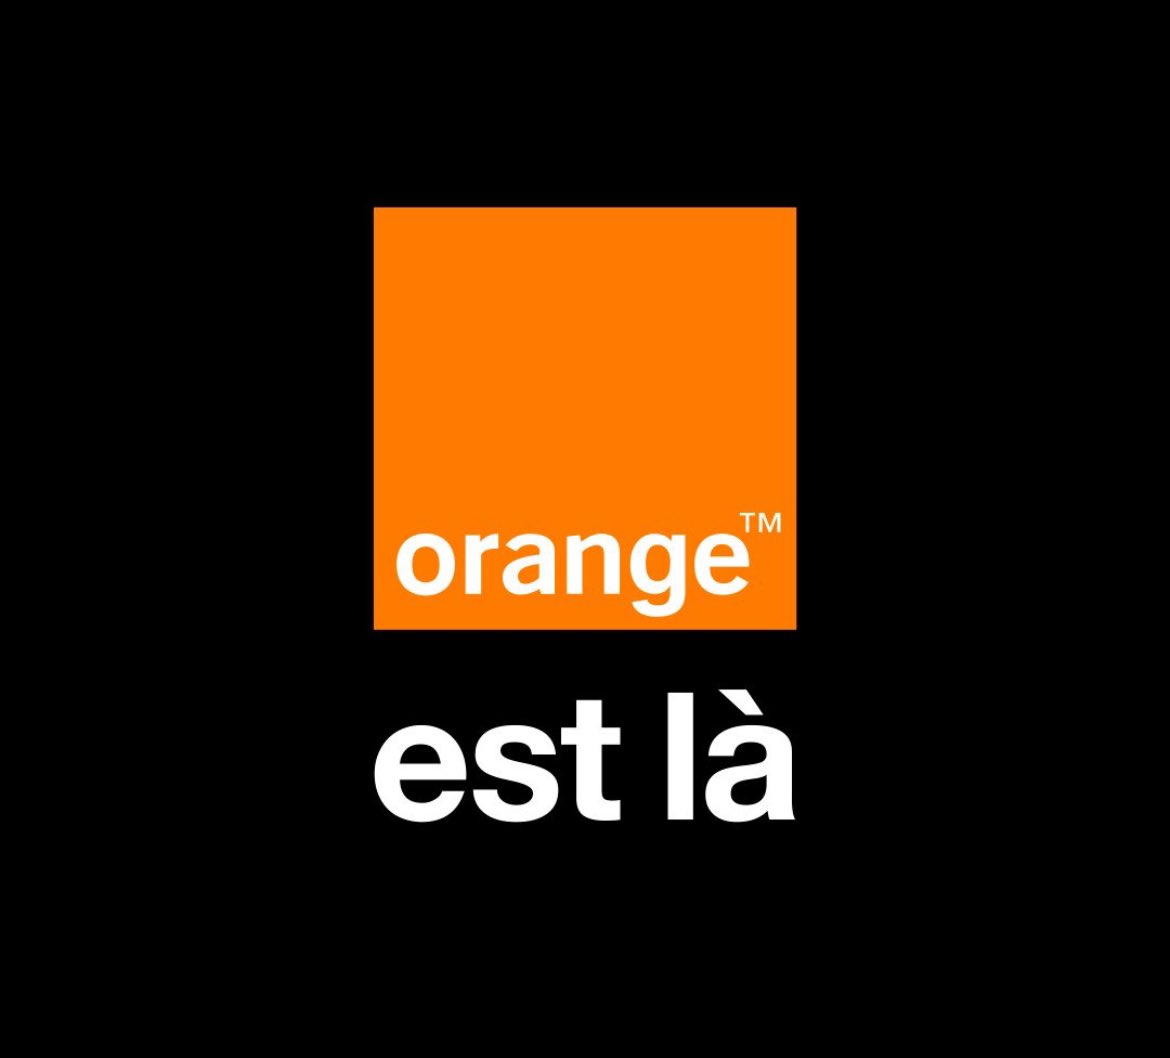 « Orange est là » devient la nouvelle signature de la #marque @orange 🧡 𝐿𝑒 𝐺𝑟𝑜𝑢𝑝𝑒 𝑂𝑟𝑎𝑛𝑔𝑒 𝑙𝑎𝑛𝑐𝑒 𝑢𝑛𝑒 𝑛𝑜𝑢𝑣𝑒𝑙𝑙𝑒 𝑠𝑖𝑔𝑛𝑎𝑡𝑢𝑟𝑒 𝑑𝑒 𝑚𝑎𝑟𝑞𝑢𝑒 𝑒𝑡 𝑎𝑗𝑢𝑠𝑡𝑒 𝑠𝑜𝑛 𝑡𝑒𝑟𝑟𝑖𝑡𝑜𝑖𝑟𝑒 𝑑𝑒 #𝑐𝑜𝑚𝑚𝑢𝑛𝑖𝑐𝑎𝑡𝑖𝑜𝑛 𝑝𝑜𝑢𝑟 𝑚𝑖𝑒𝑢𝑥…